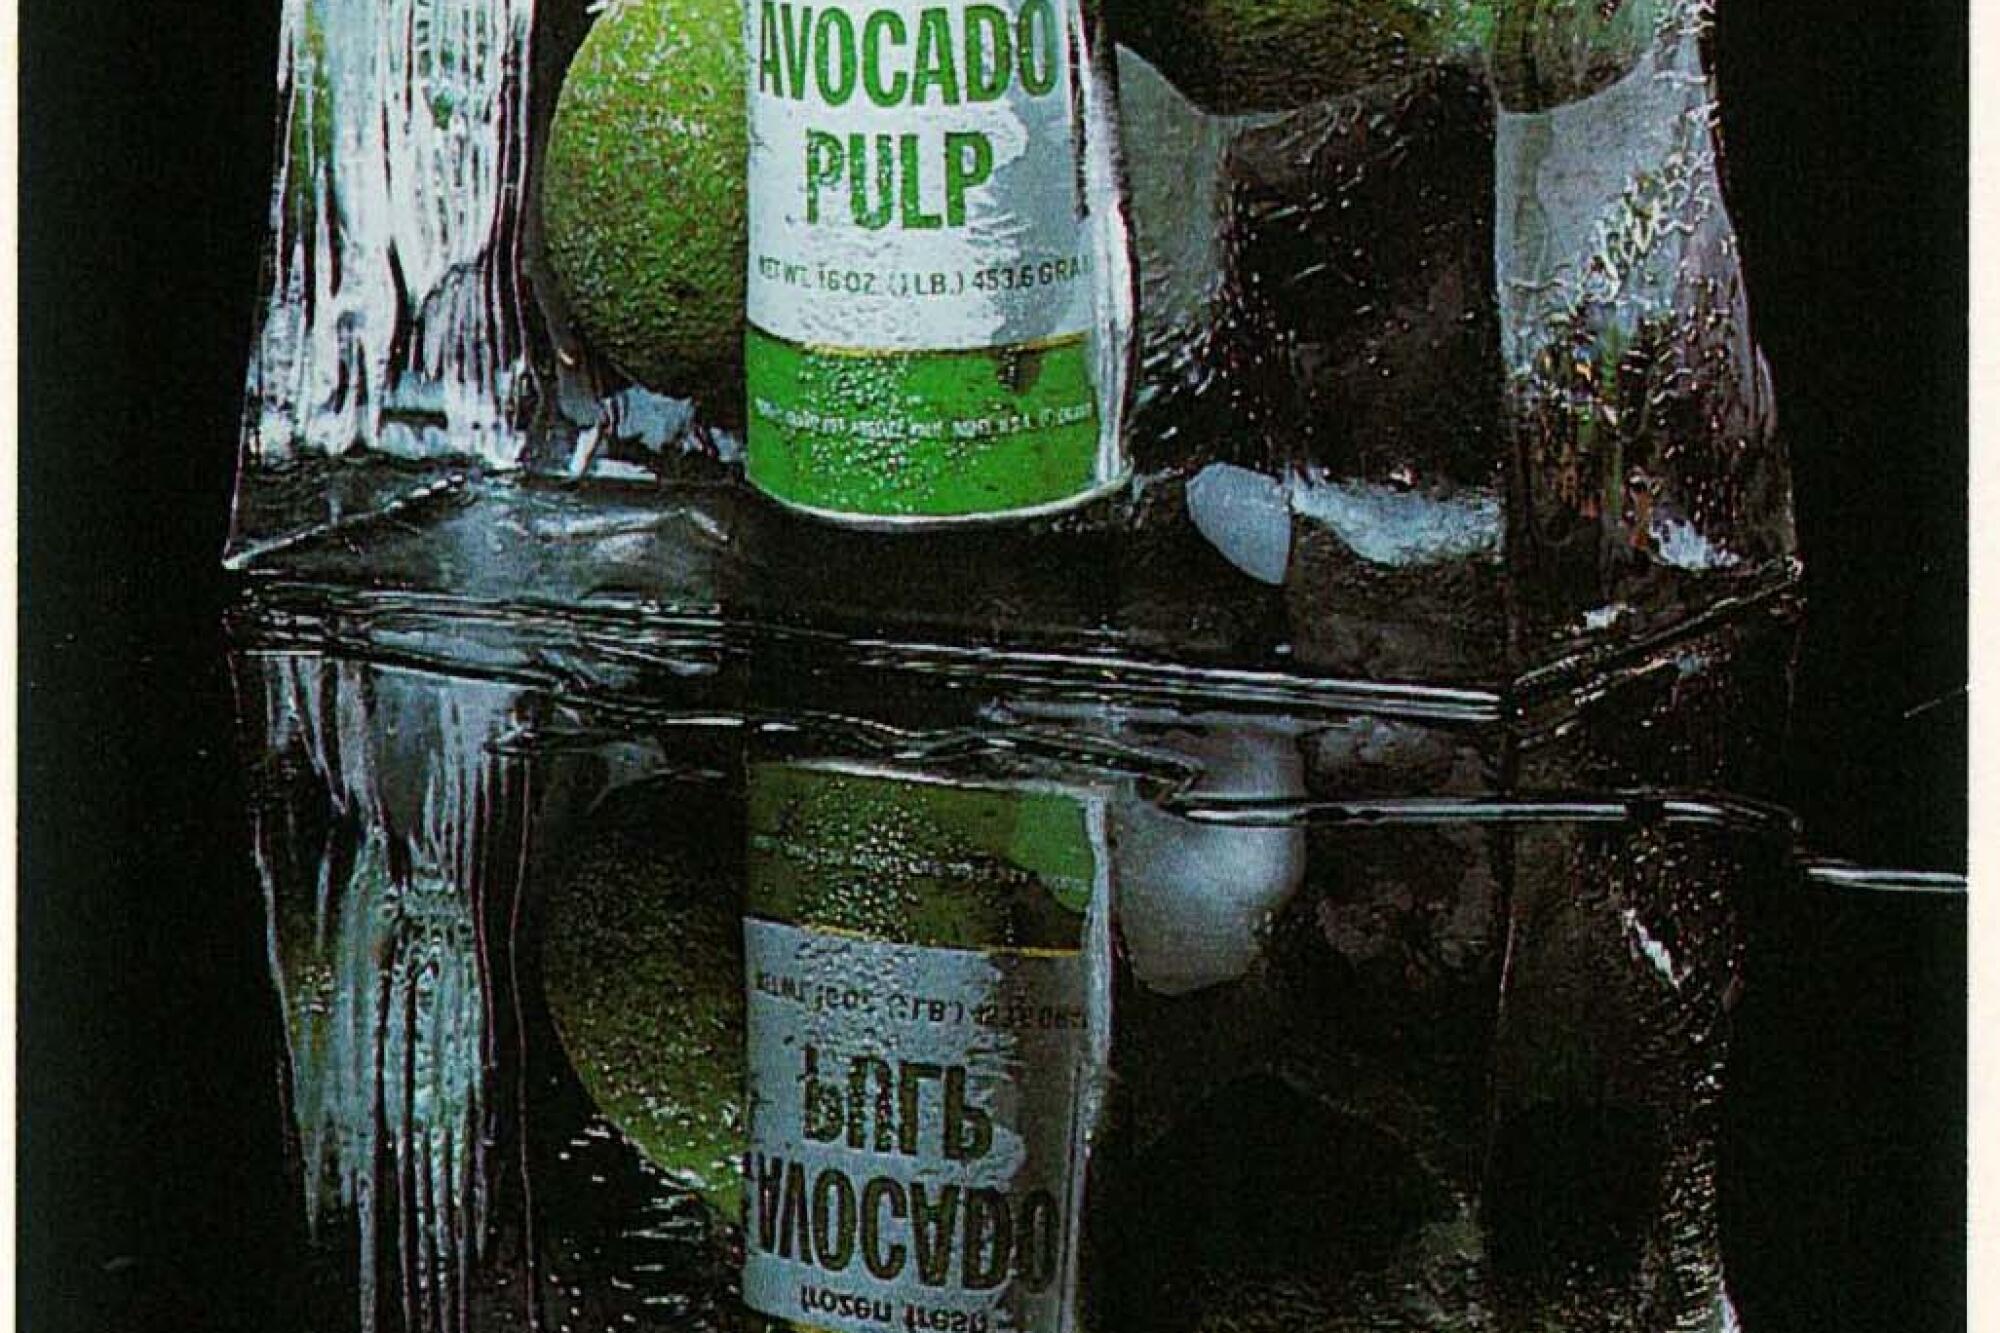 Imagen de mercadotecnia de Calavo de 1980 para pulpa de aguacate congelada.